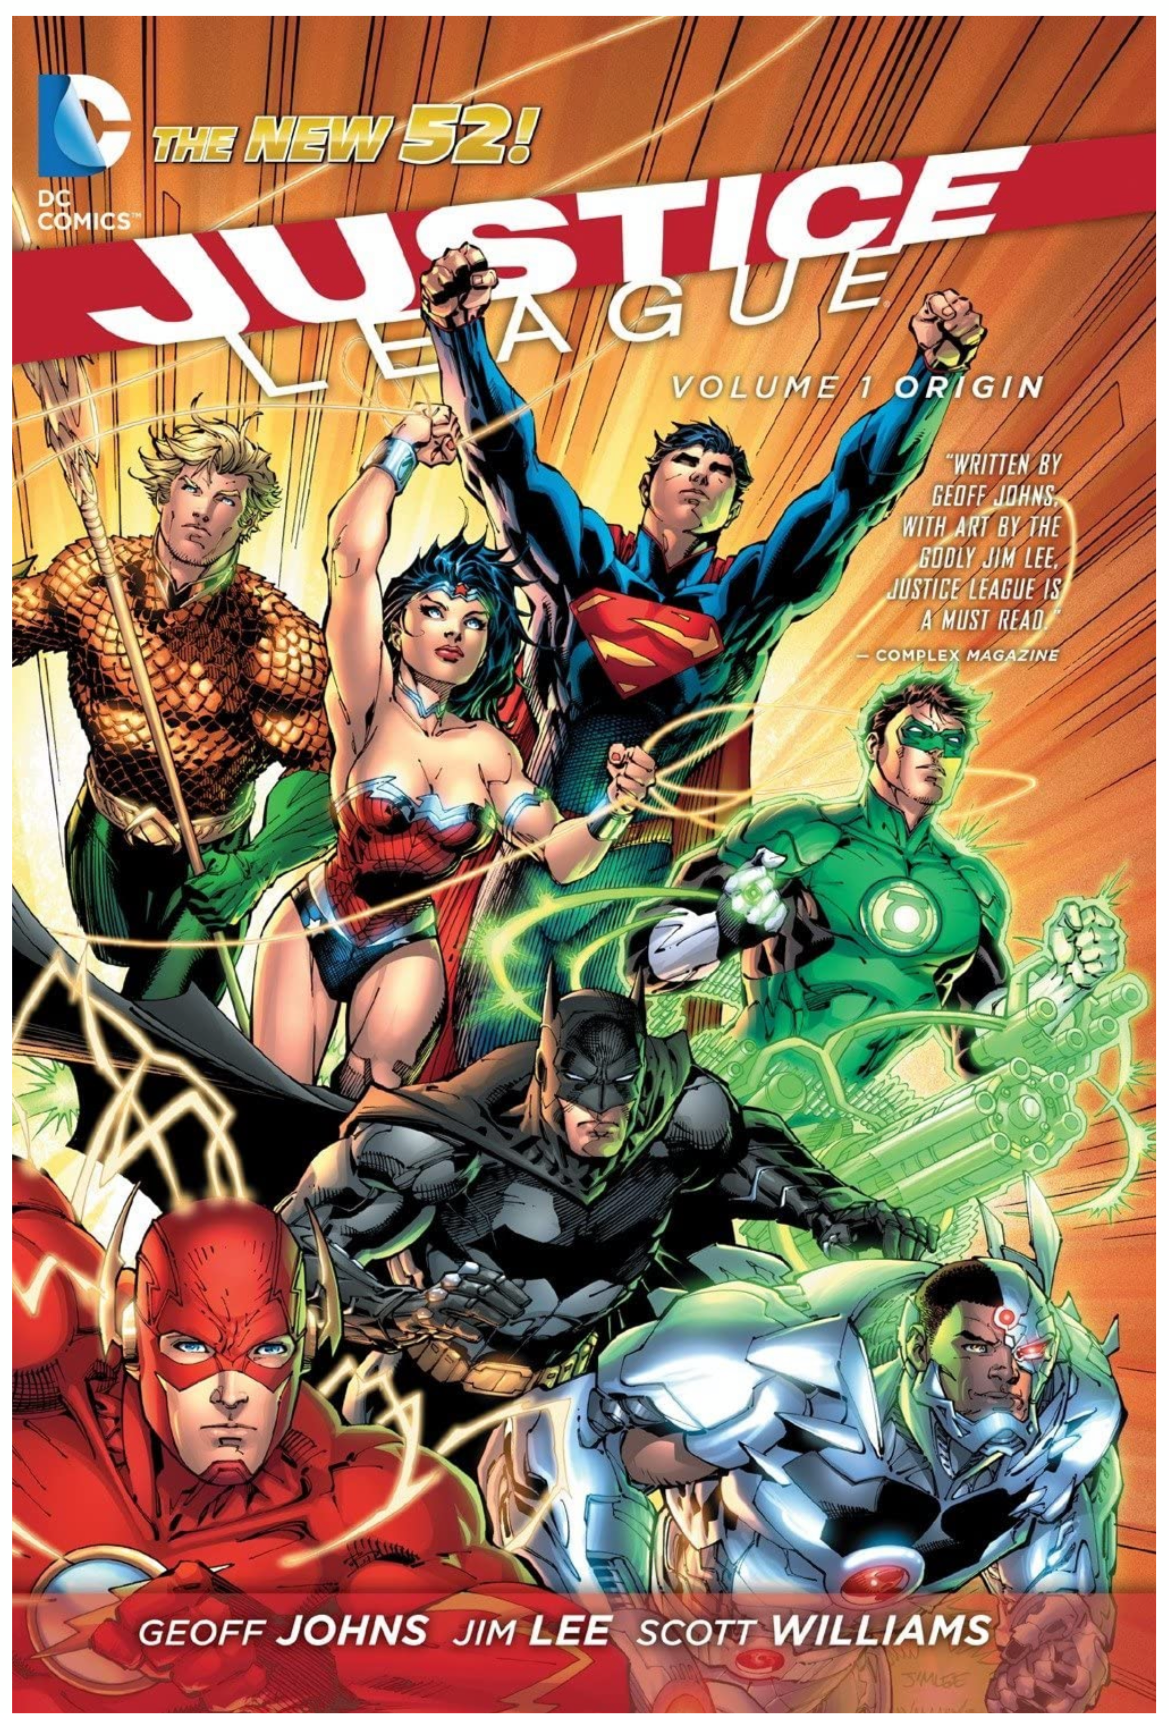 Justice League New 52 Vol 1 Origin